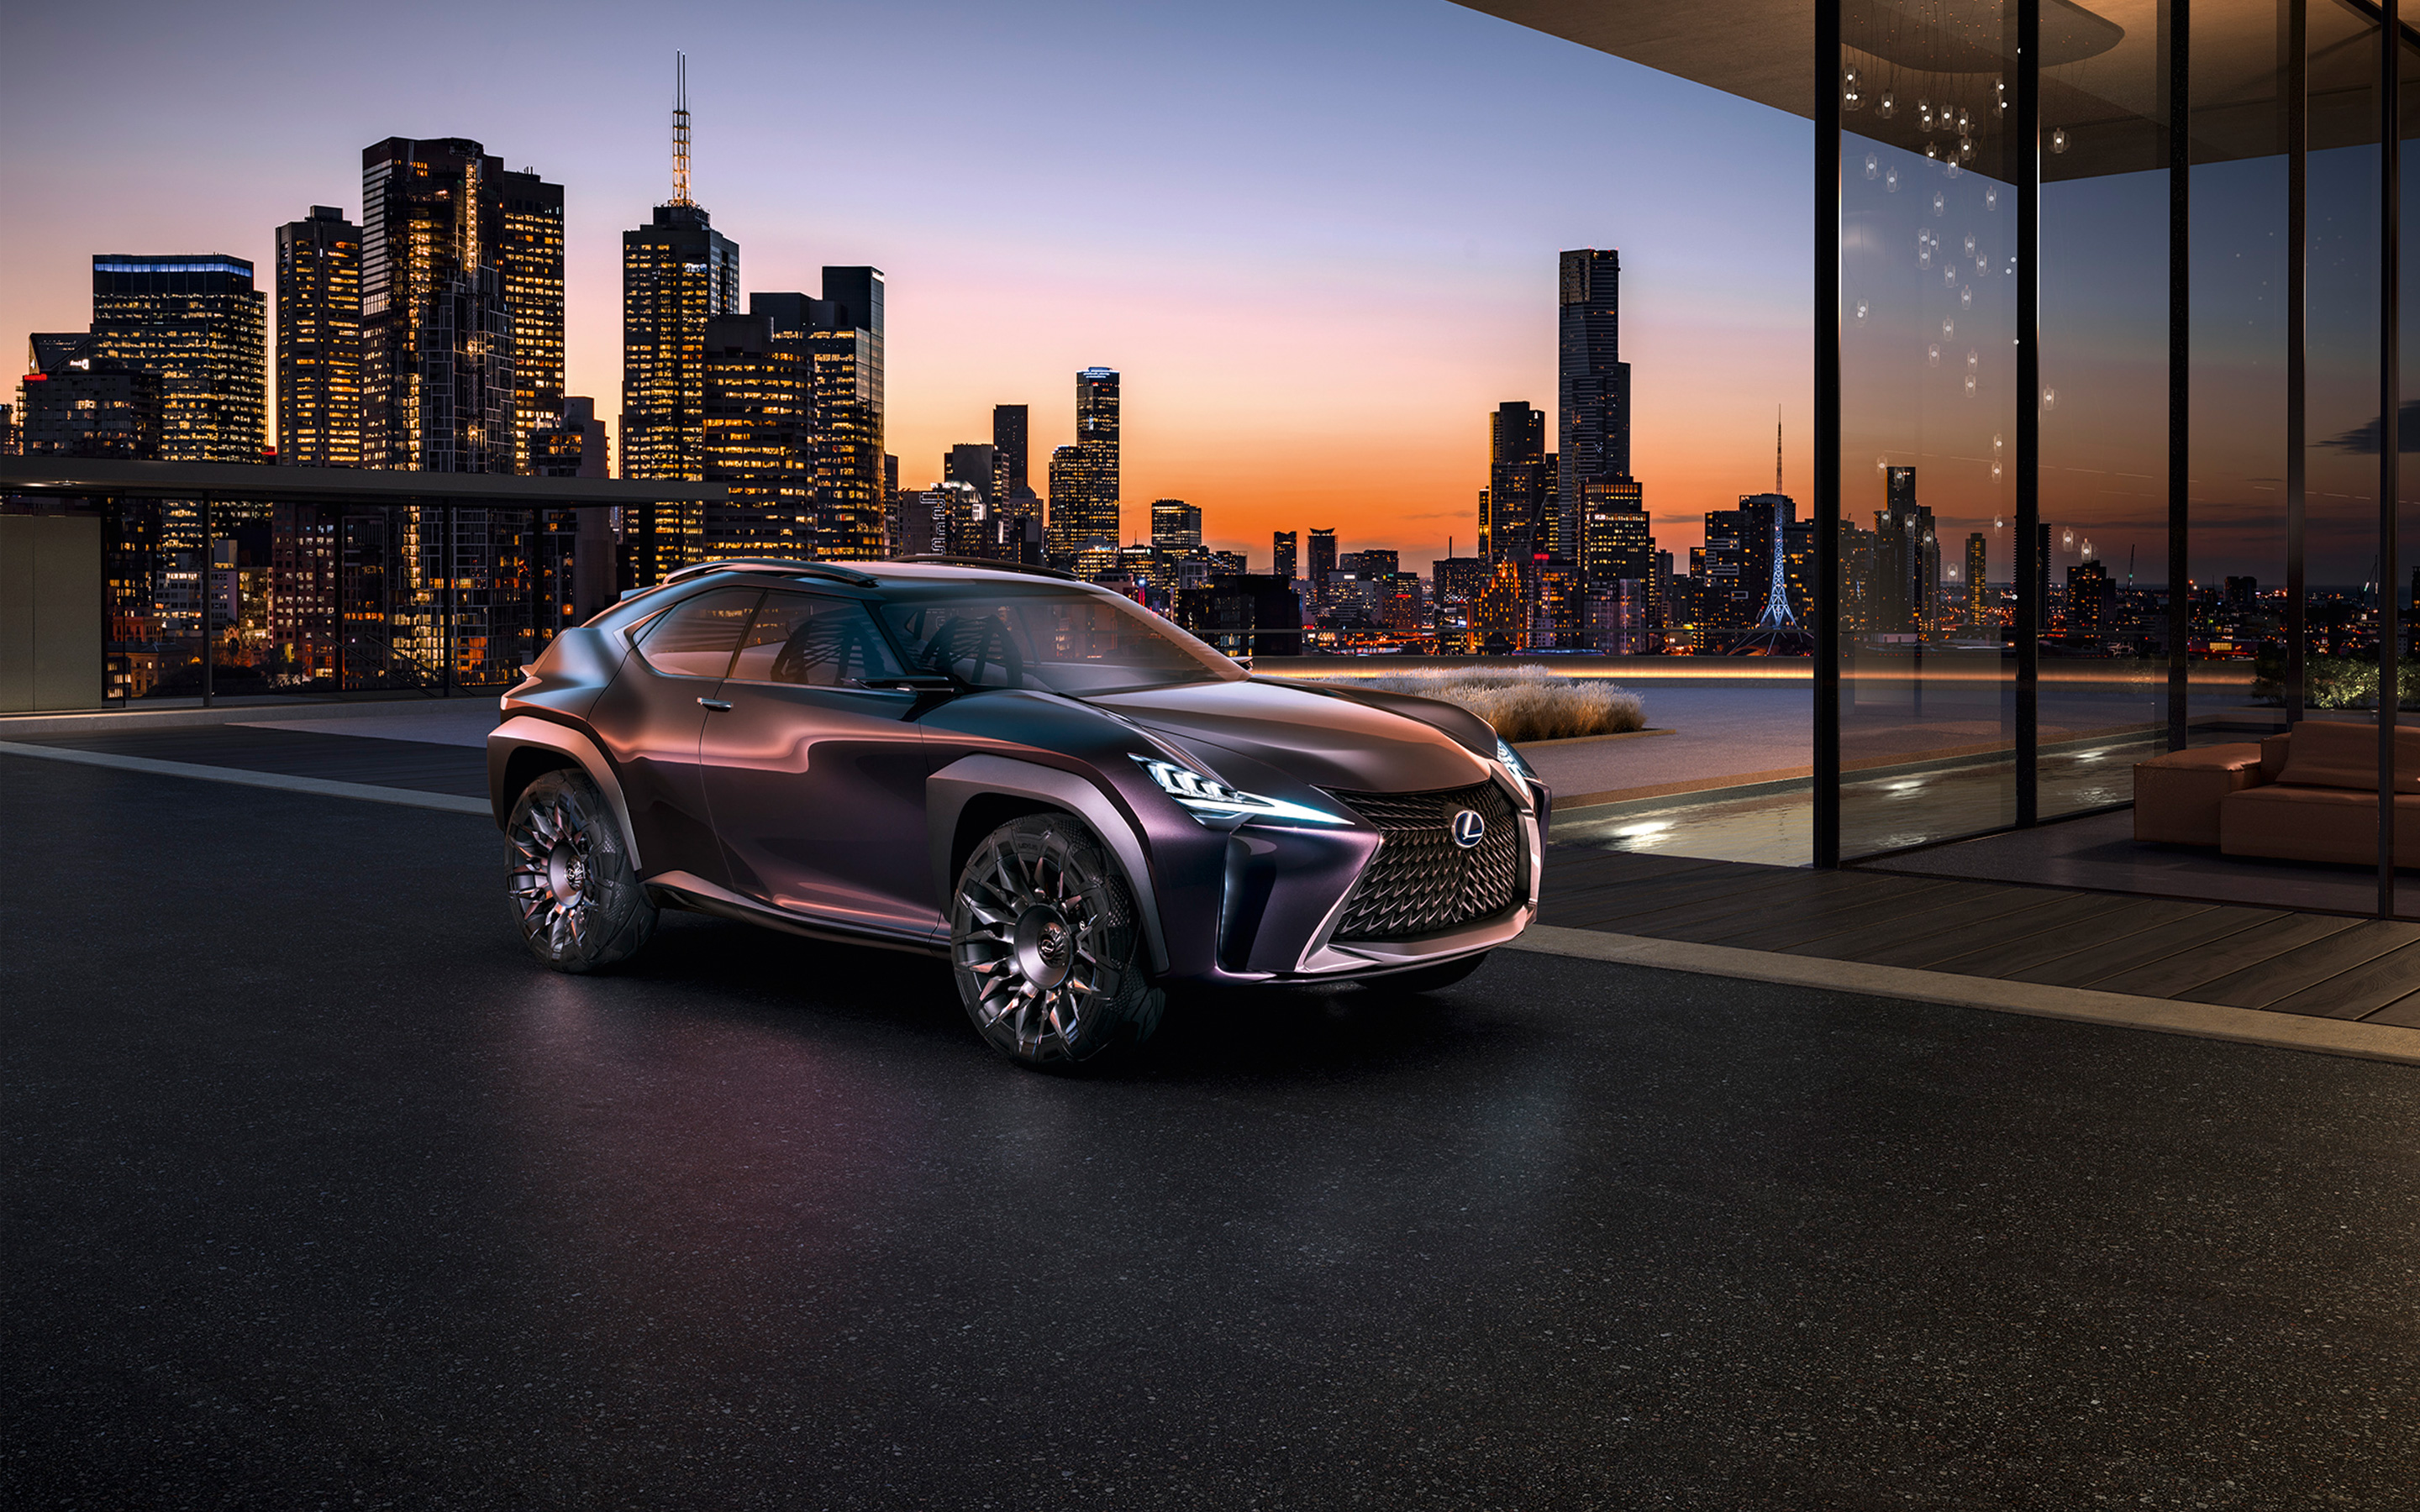 Chào mừng bạn đến với hình ảnh của Lexus UX đầy năng lượng và nổi bật. Hãy xem qua các tính năng hiện đại và trang bị tiên tiến của chiếc xe này trong một hành trình tuyệt vời. Hãy tưởng tượng mình ngồi trên ghế da sang trọng của UX đường đưa bạn đến những chuyến đi đáng nhớ. 